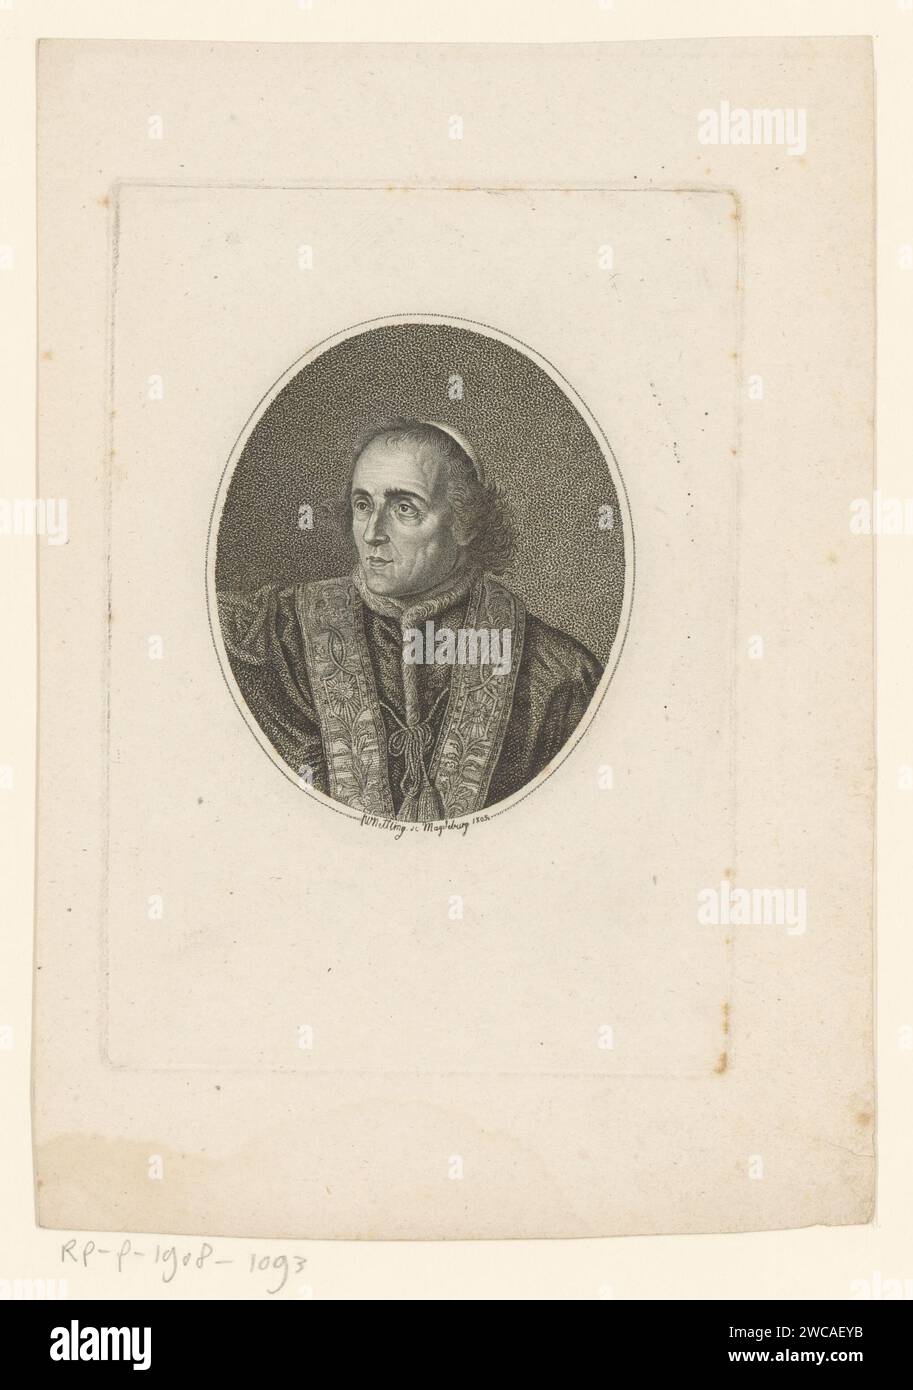 Portret van Pius VII., Friedrich Wilhelm Nettling, 1805 Druck Virginburg-Papier historische Personen. Liturgische Gewänder, Kanonikale Stockfoto